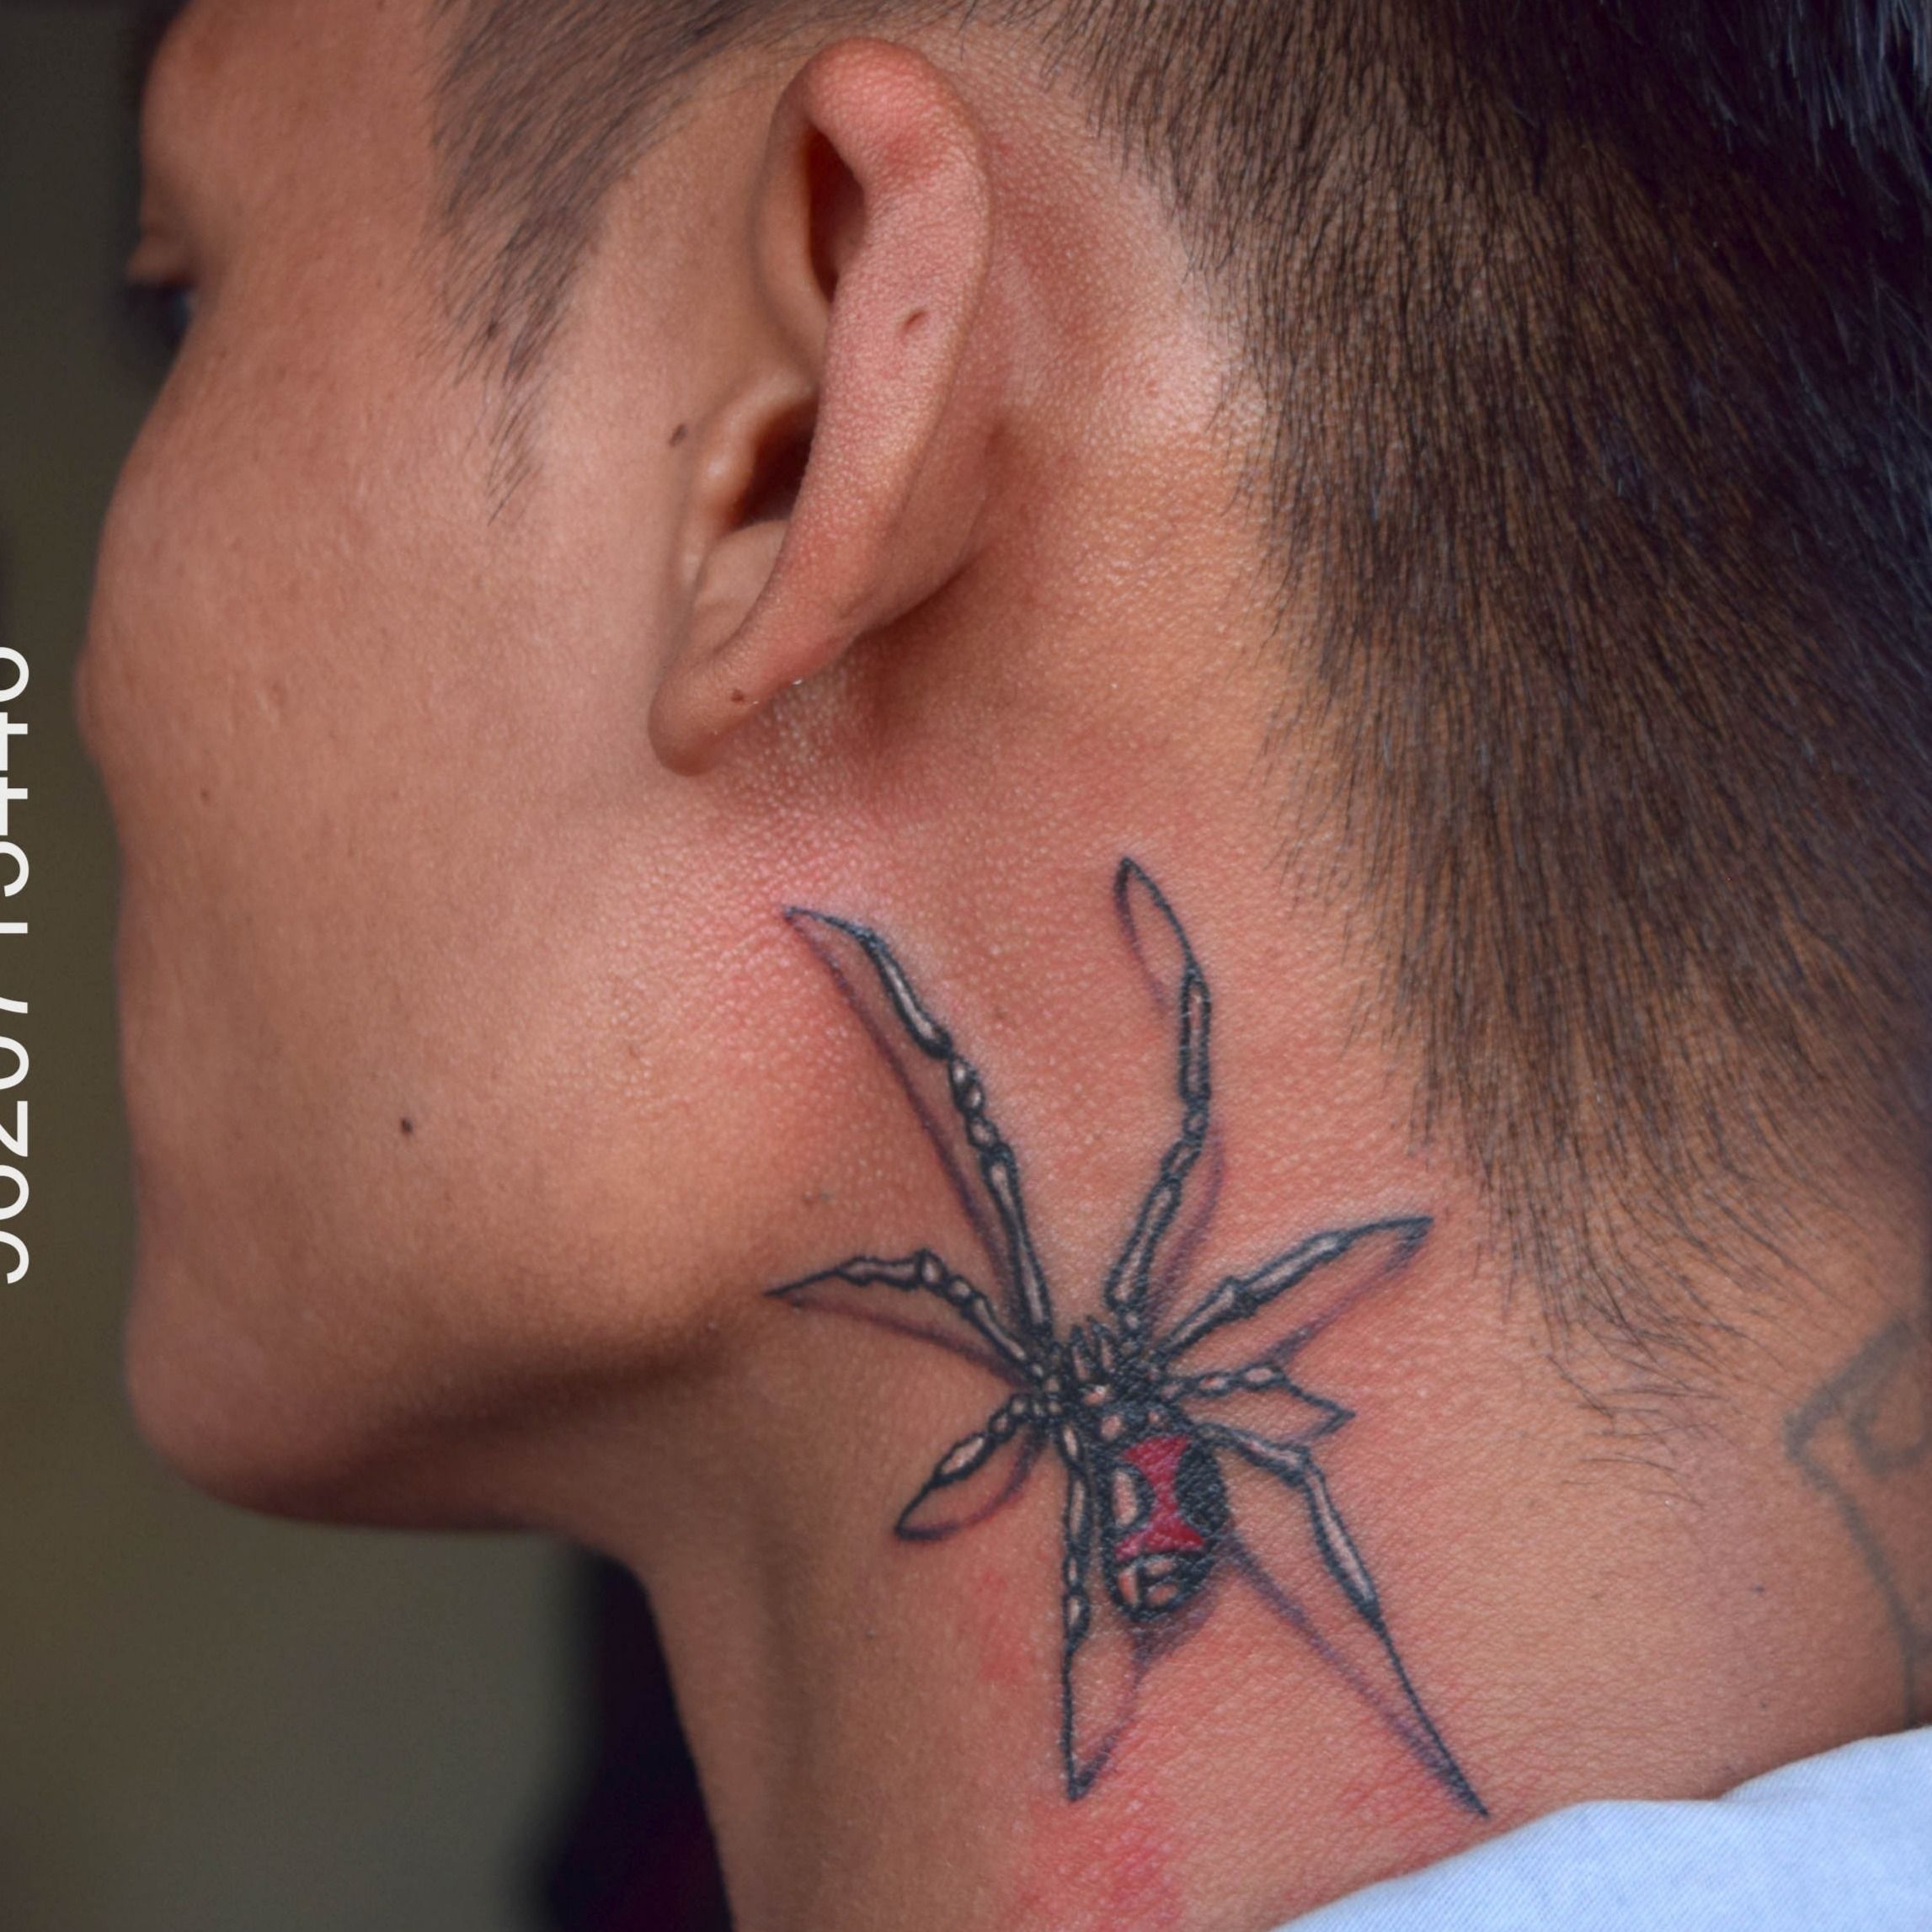 Tattoo uploaded by Kinglines Tattoo Studio • 3d realistic Spider tattoo on  neck done at Kinglines Tattoo Studio • Tattoodo